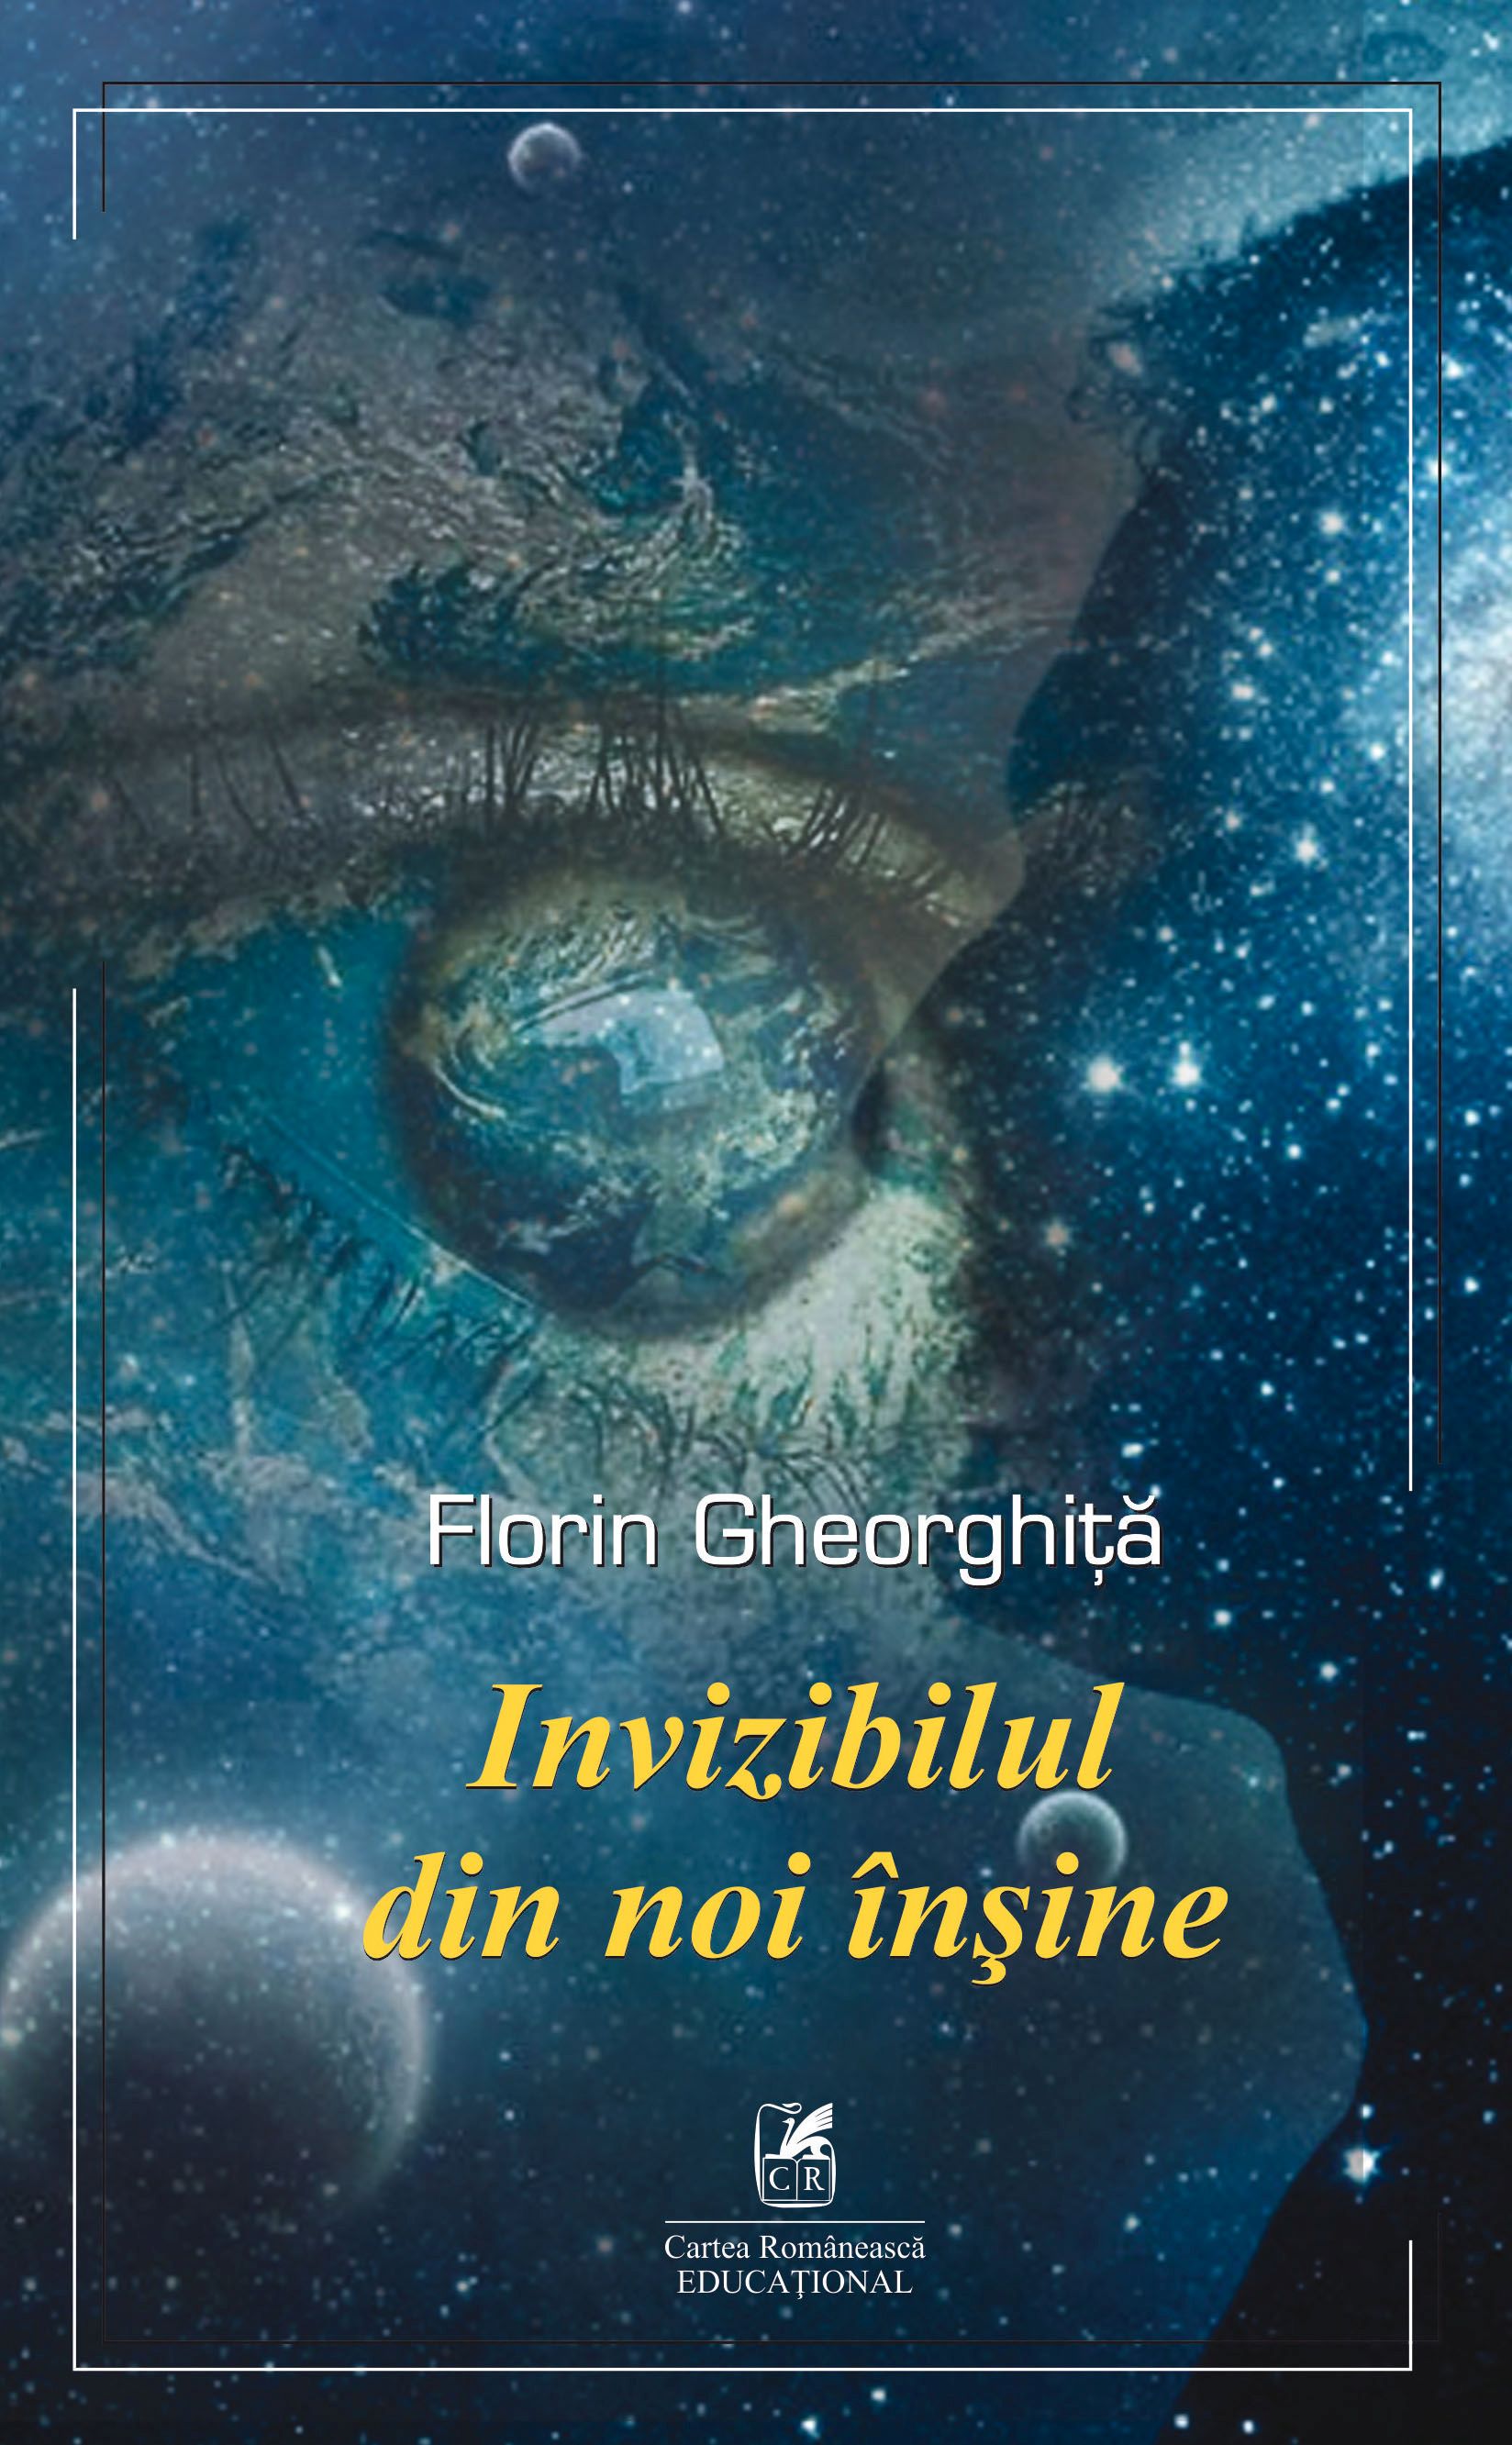 PDF Invizibilul din noi insine | Florin Gheorghita Cartea Romaneasca educational Carte